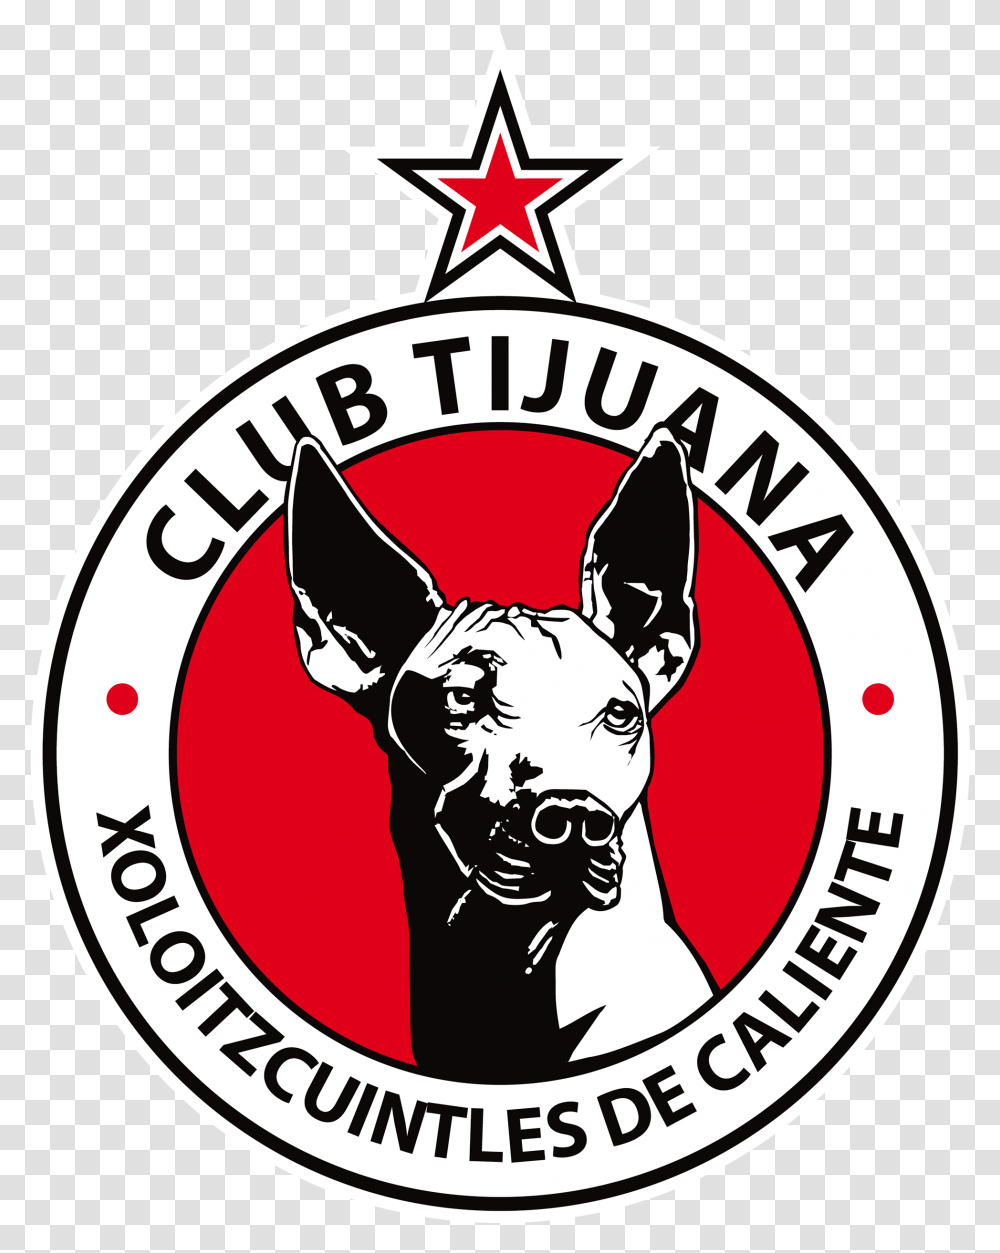 Club Tijuana Logo Football Logos Xolos De Tijuana, Symbol, Trademark, Emblem, Badge Transparent Png